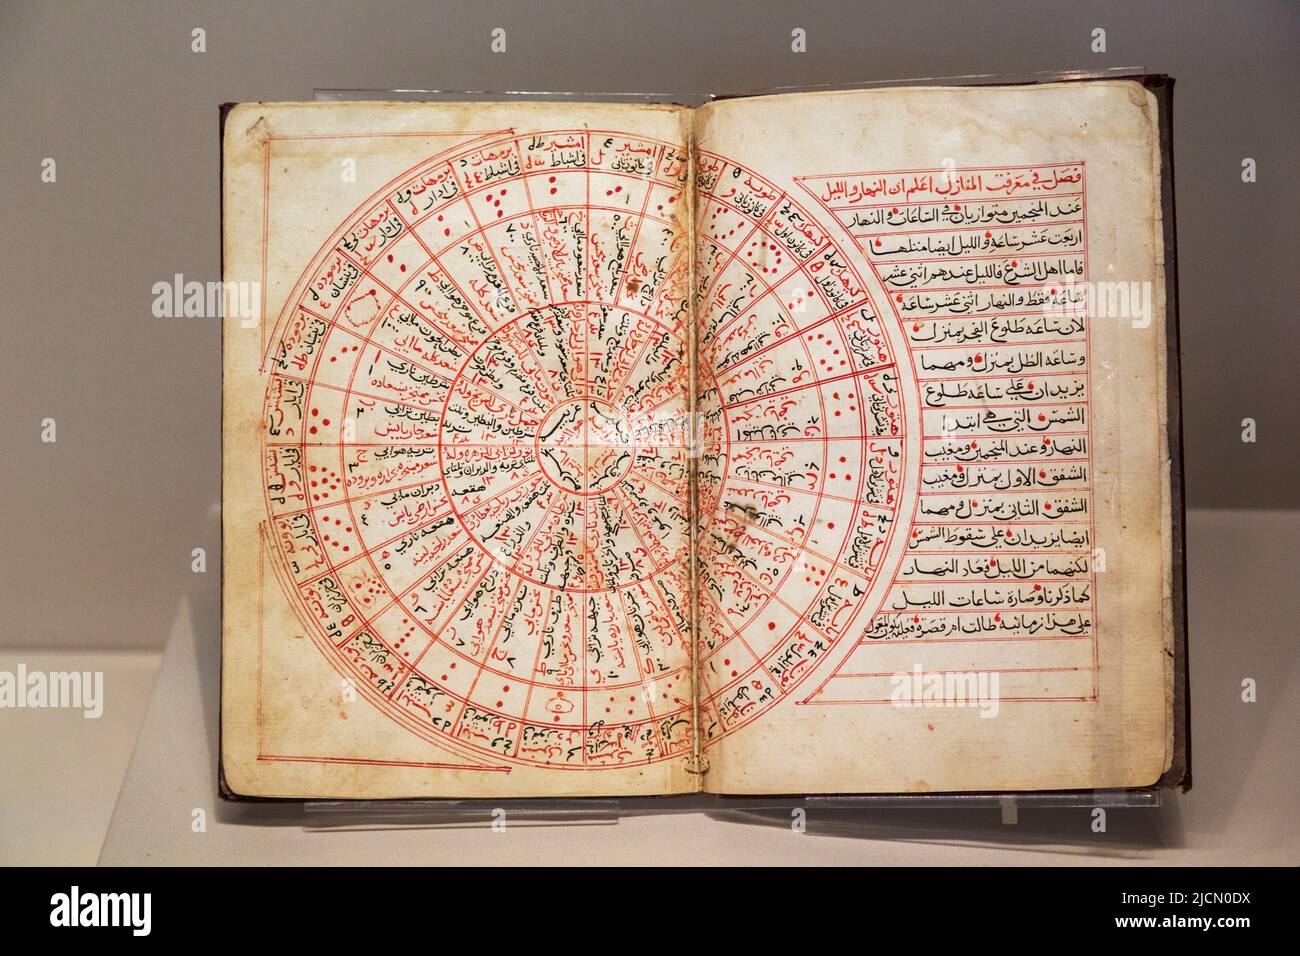 Astronomische Abhandlung aus dem Jahr 1504, aus Kairo, Ägypten. Das Buch wurde von Shihab al-DIN Ahmad ibn Rajab verfasst und von einem anderen Astronomen Mu kopiert Stockfoto